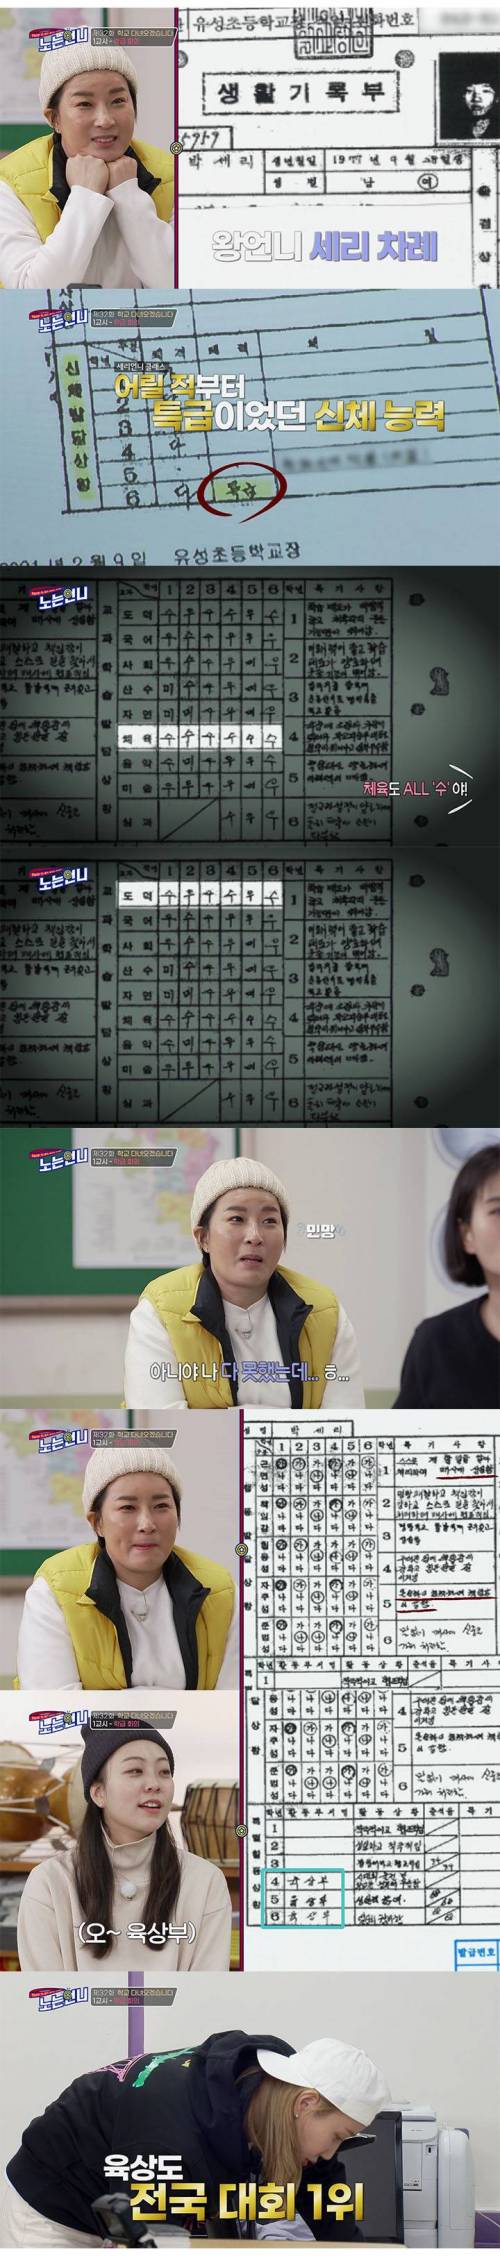 박세리 초등학교 생활기록부 공개.jpg